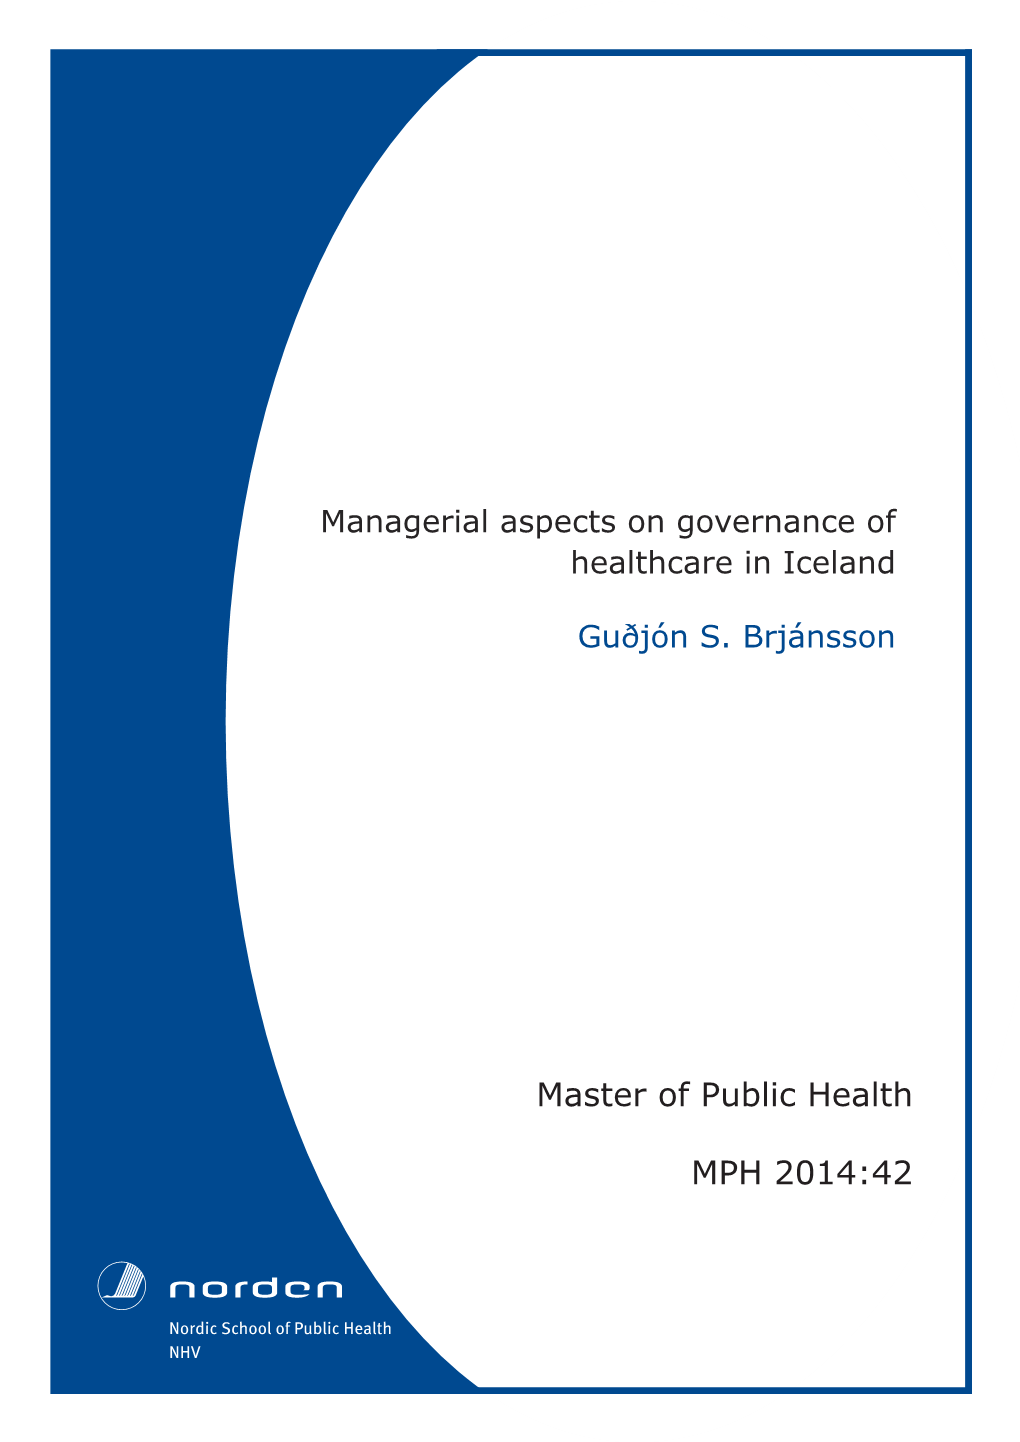 Master of Public Health MPH 2014:42